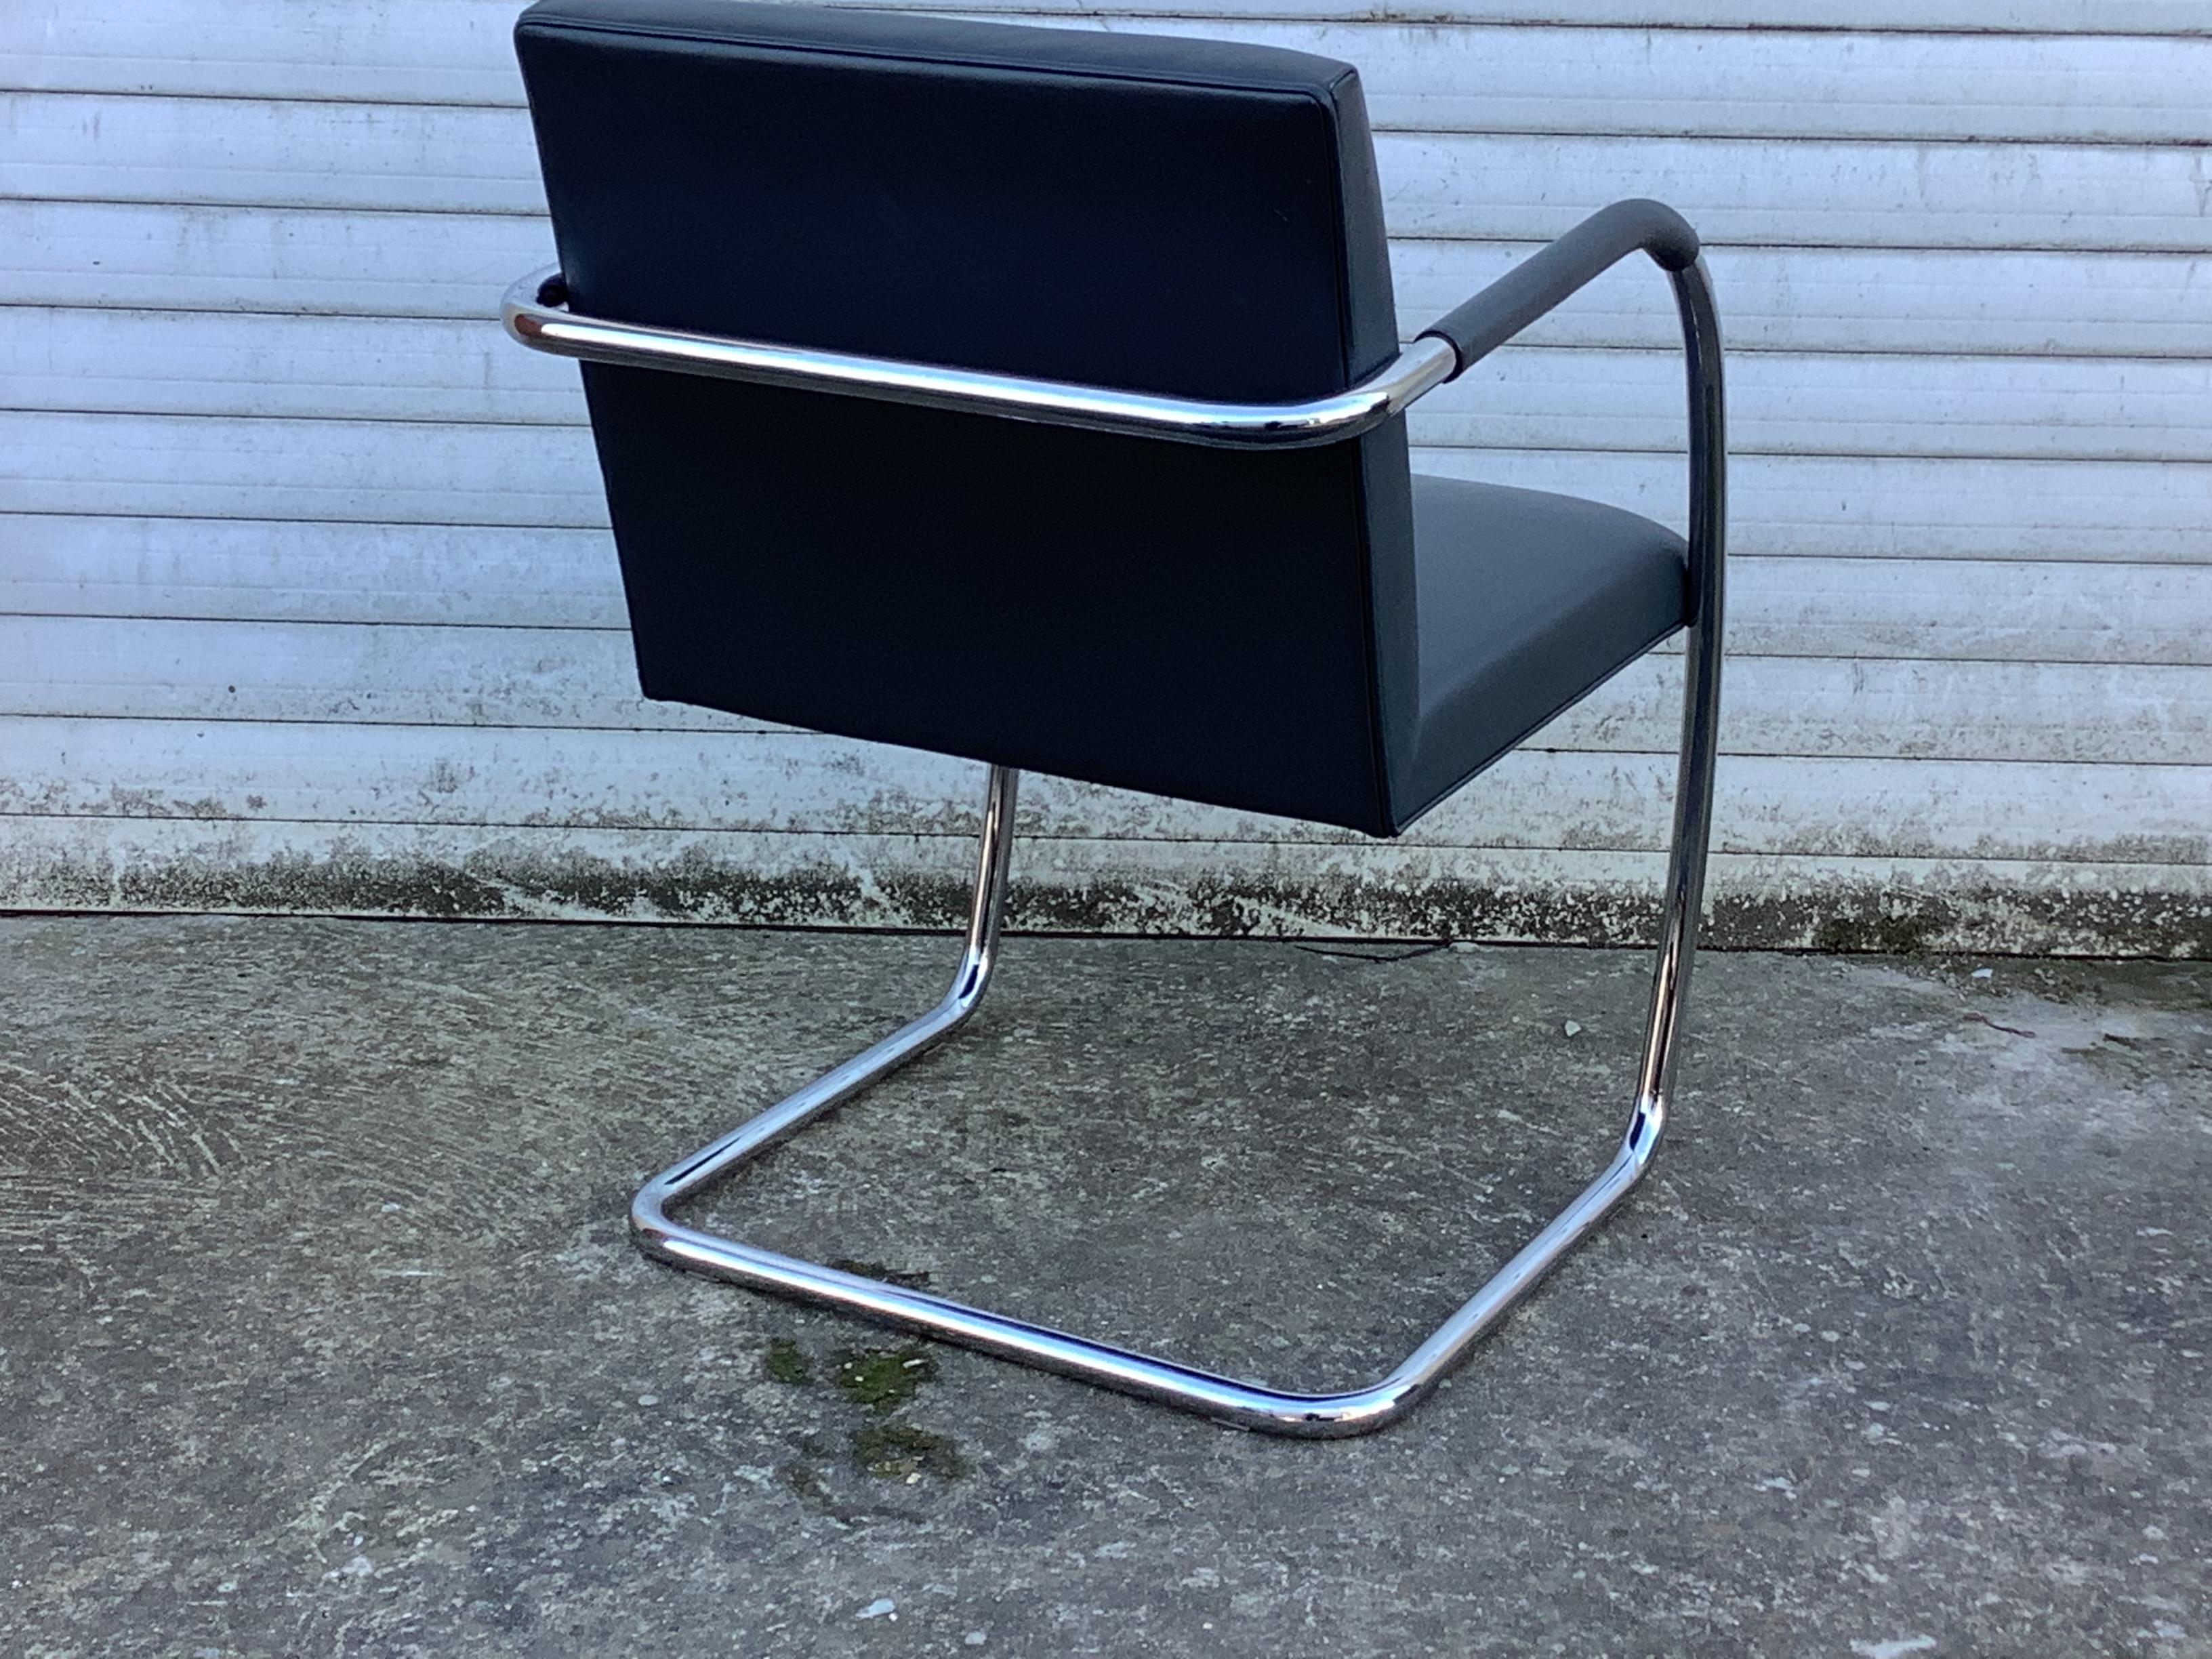 Une icône du design 

Conçu par Ludwig Mies Van Der Rohe en 1930, ce fauteuil Knoll a une structure en tube de chrome poli. De manière ingénieuse, il n'y a pas de connexions visibles entre le siège et le châssis, car l'élément du siège est en